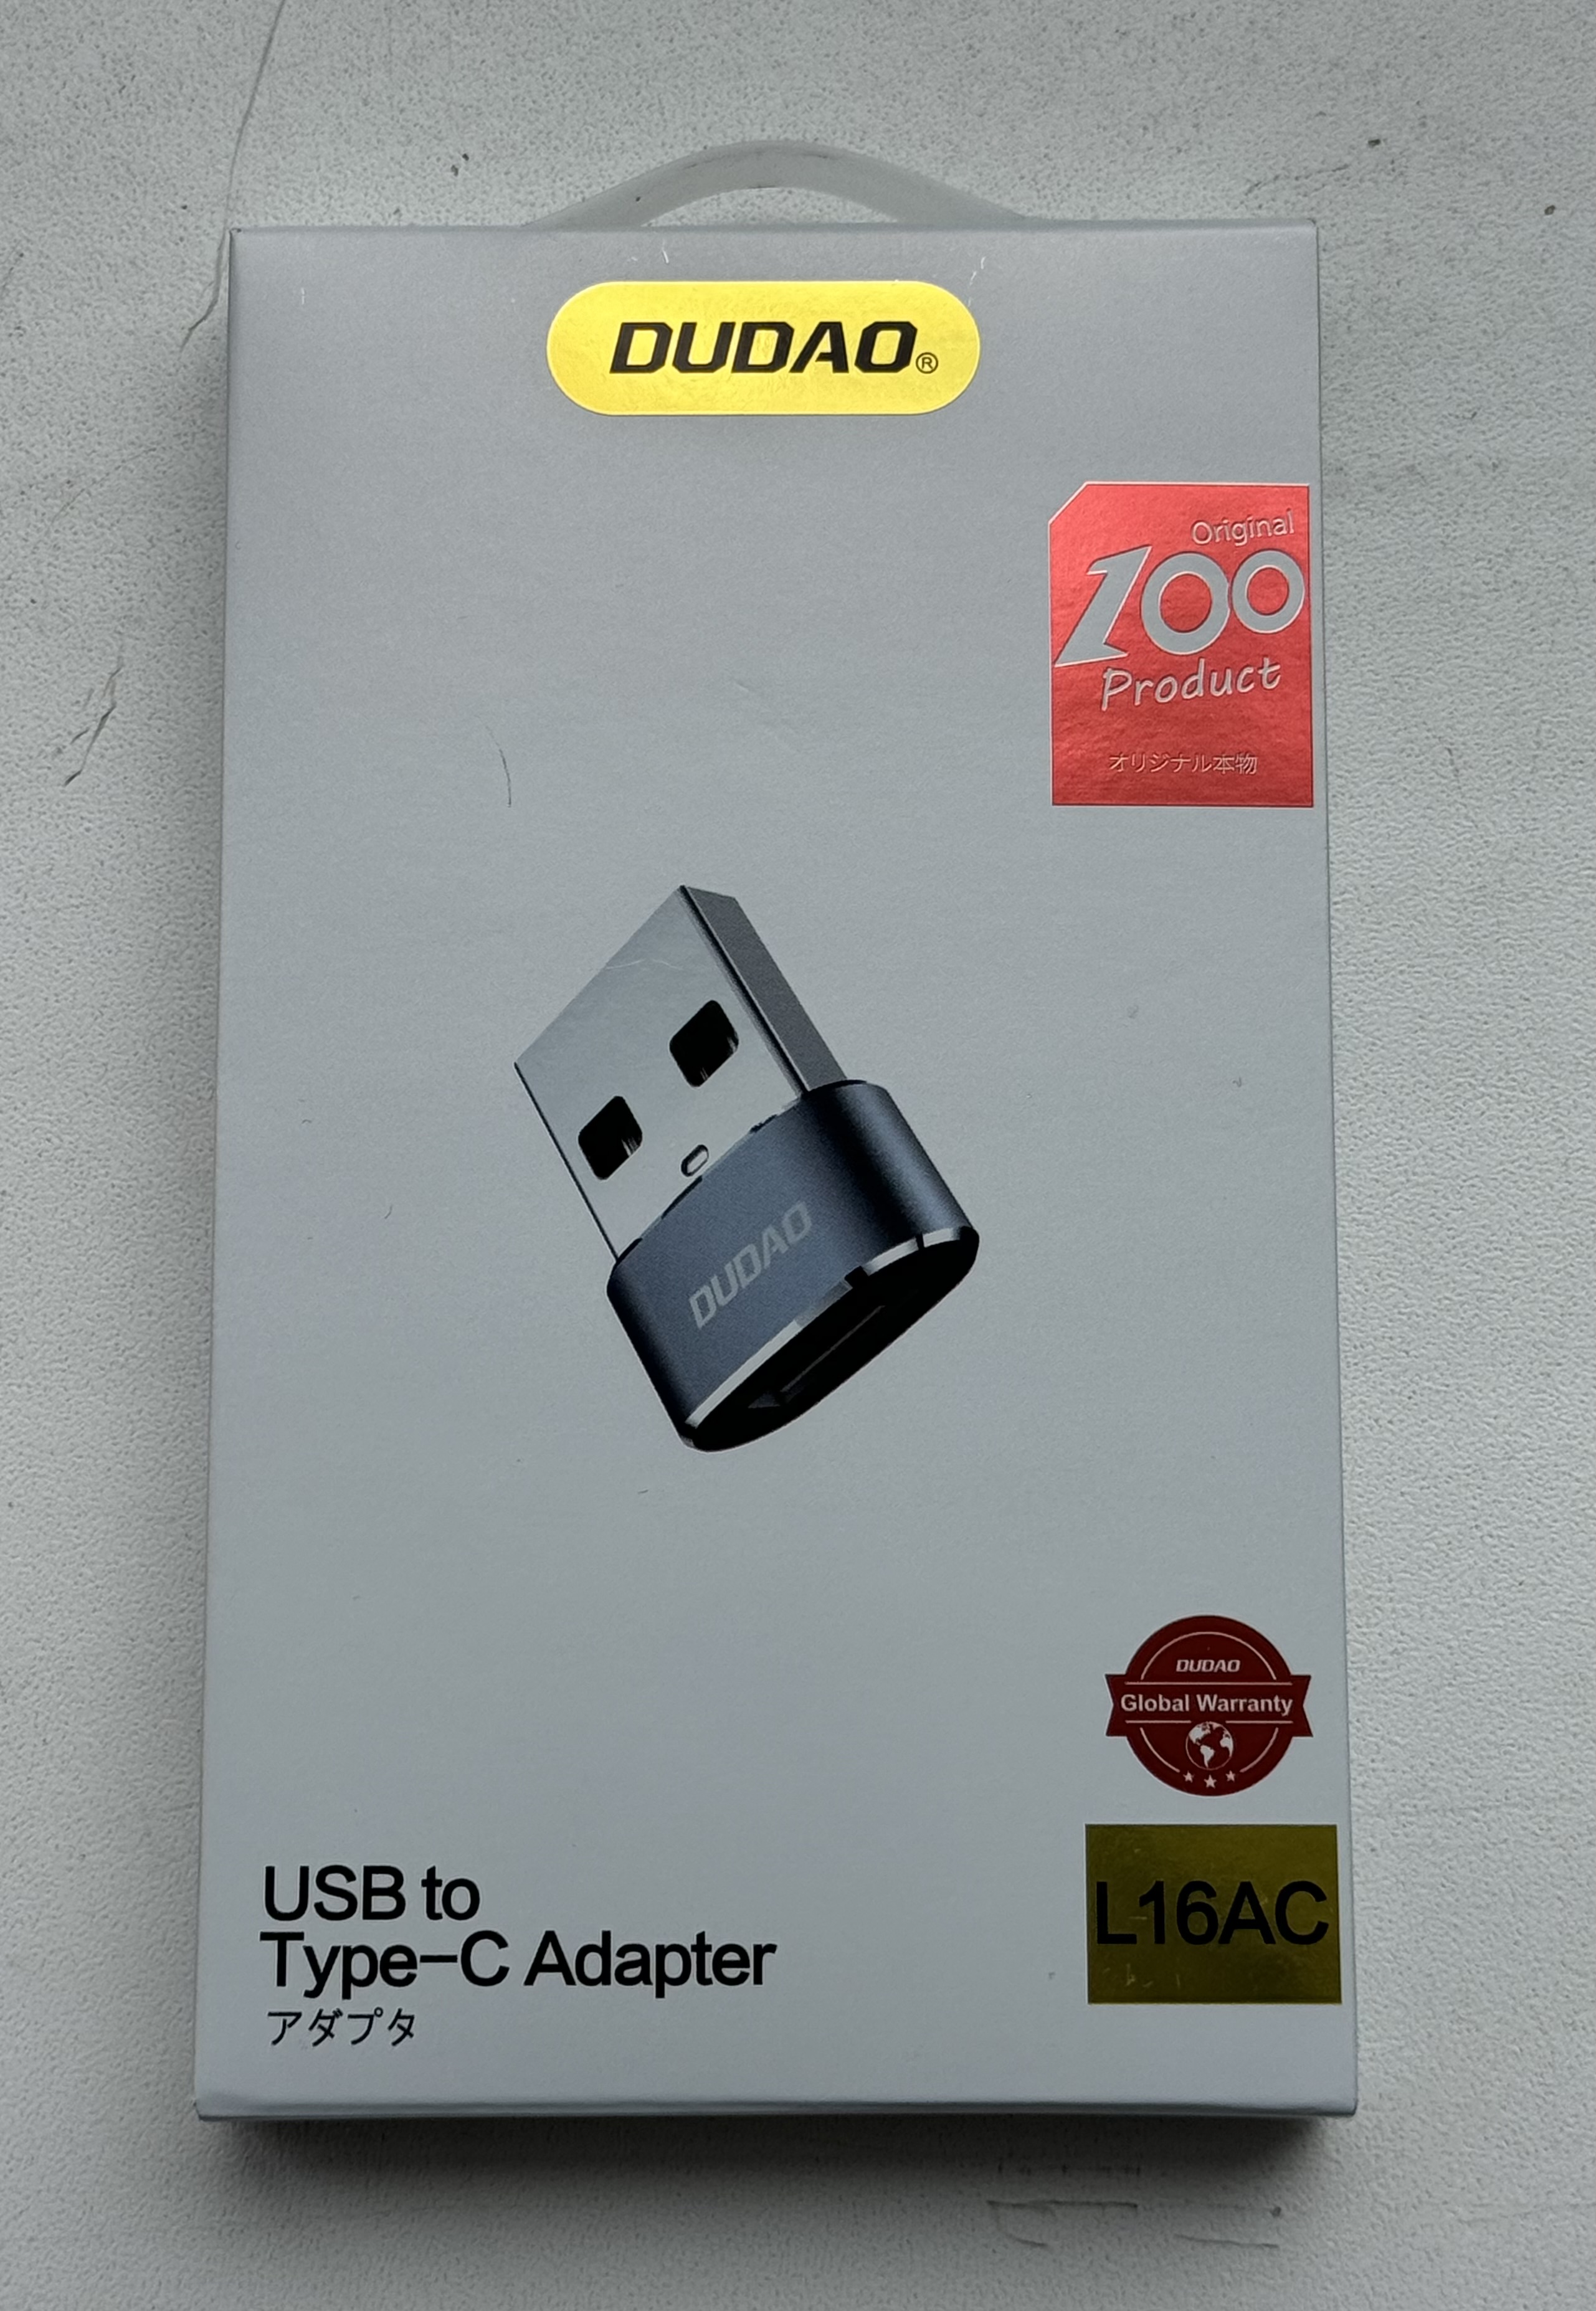 Adapteris USB to Type-C L16AC